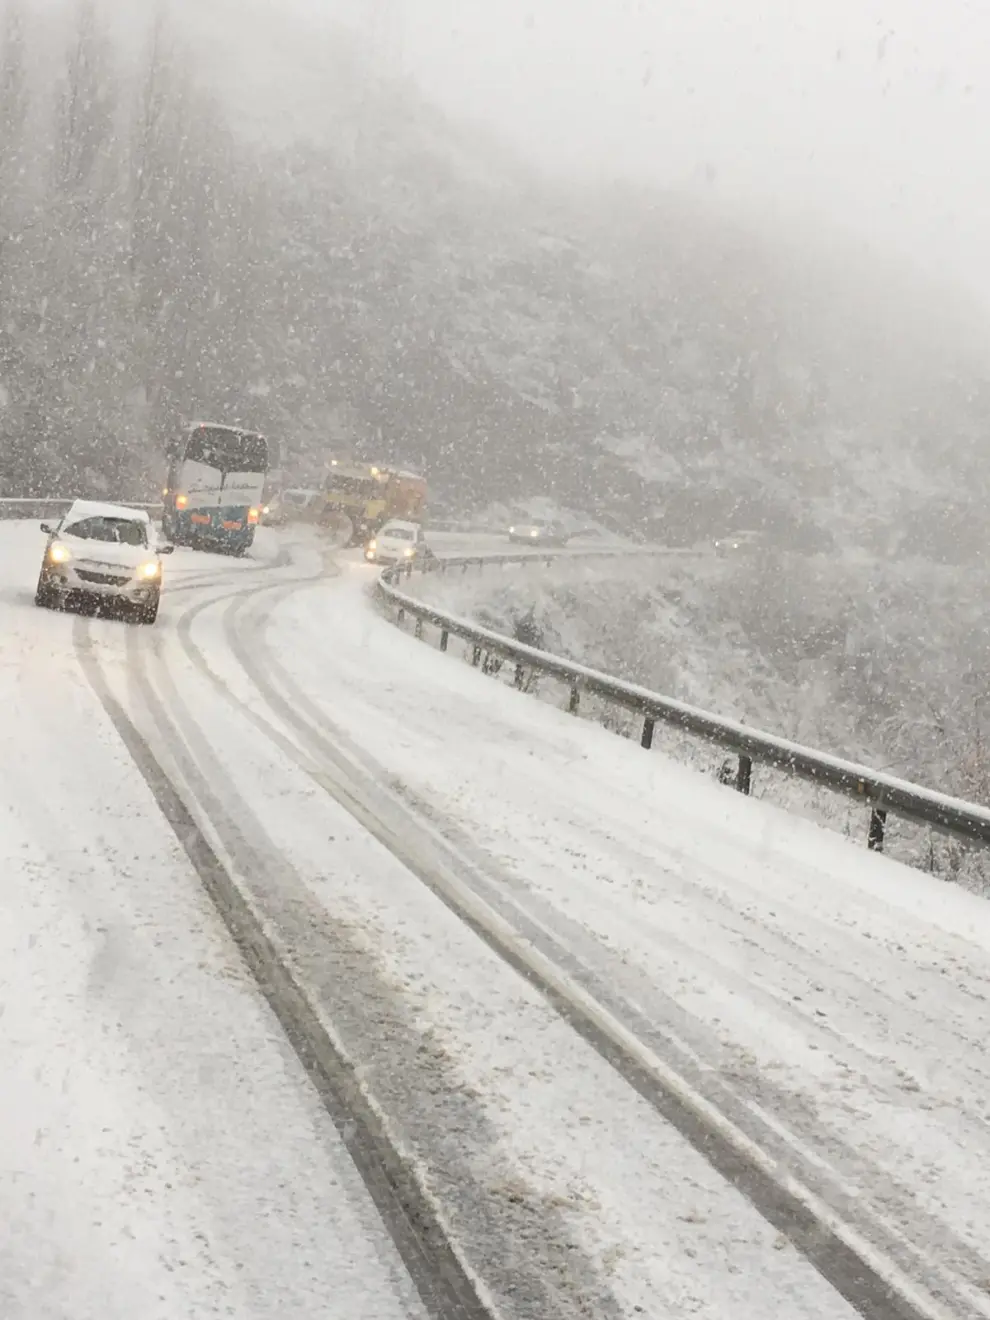 Vuelve la nieve al Pirineo oscense. Vehículos afectados por la nieve caída en la carretera A-136, en el término de Sallent de Gállego.